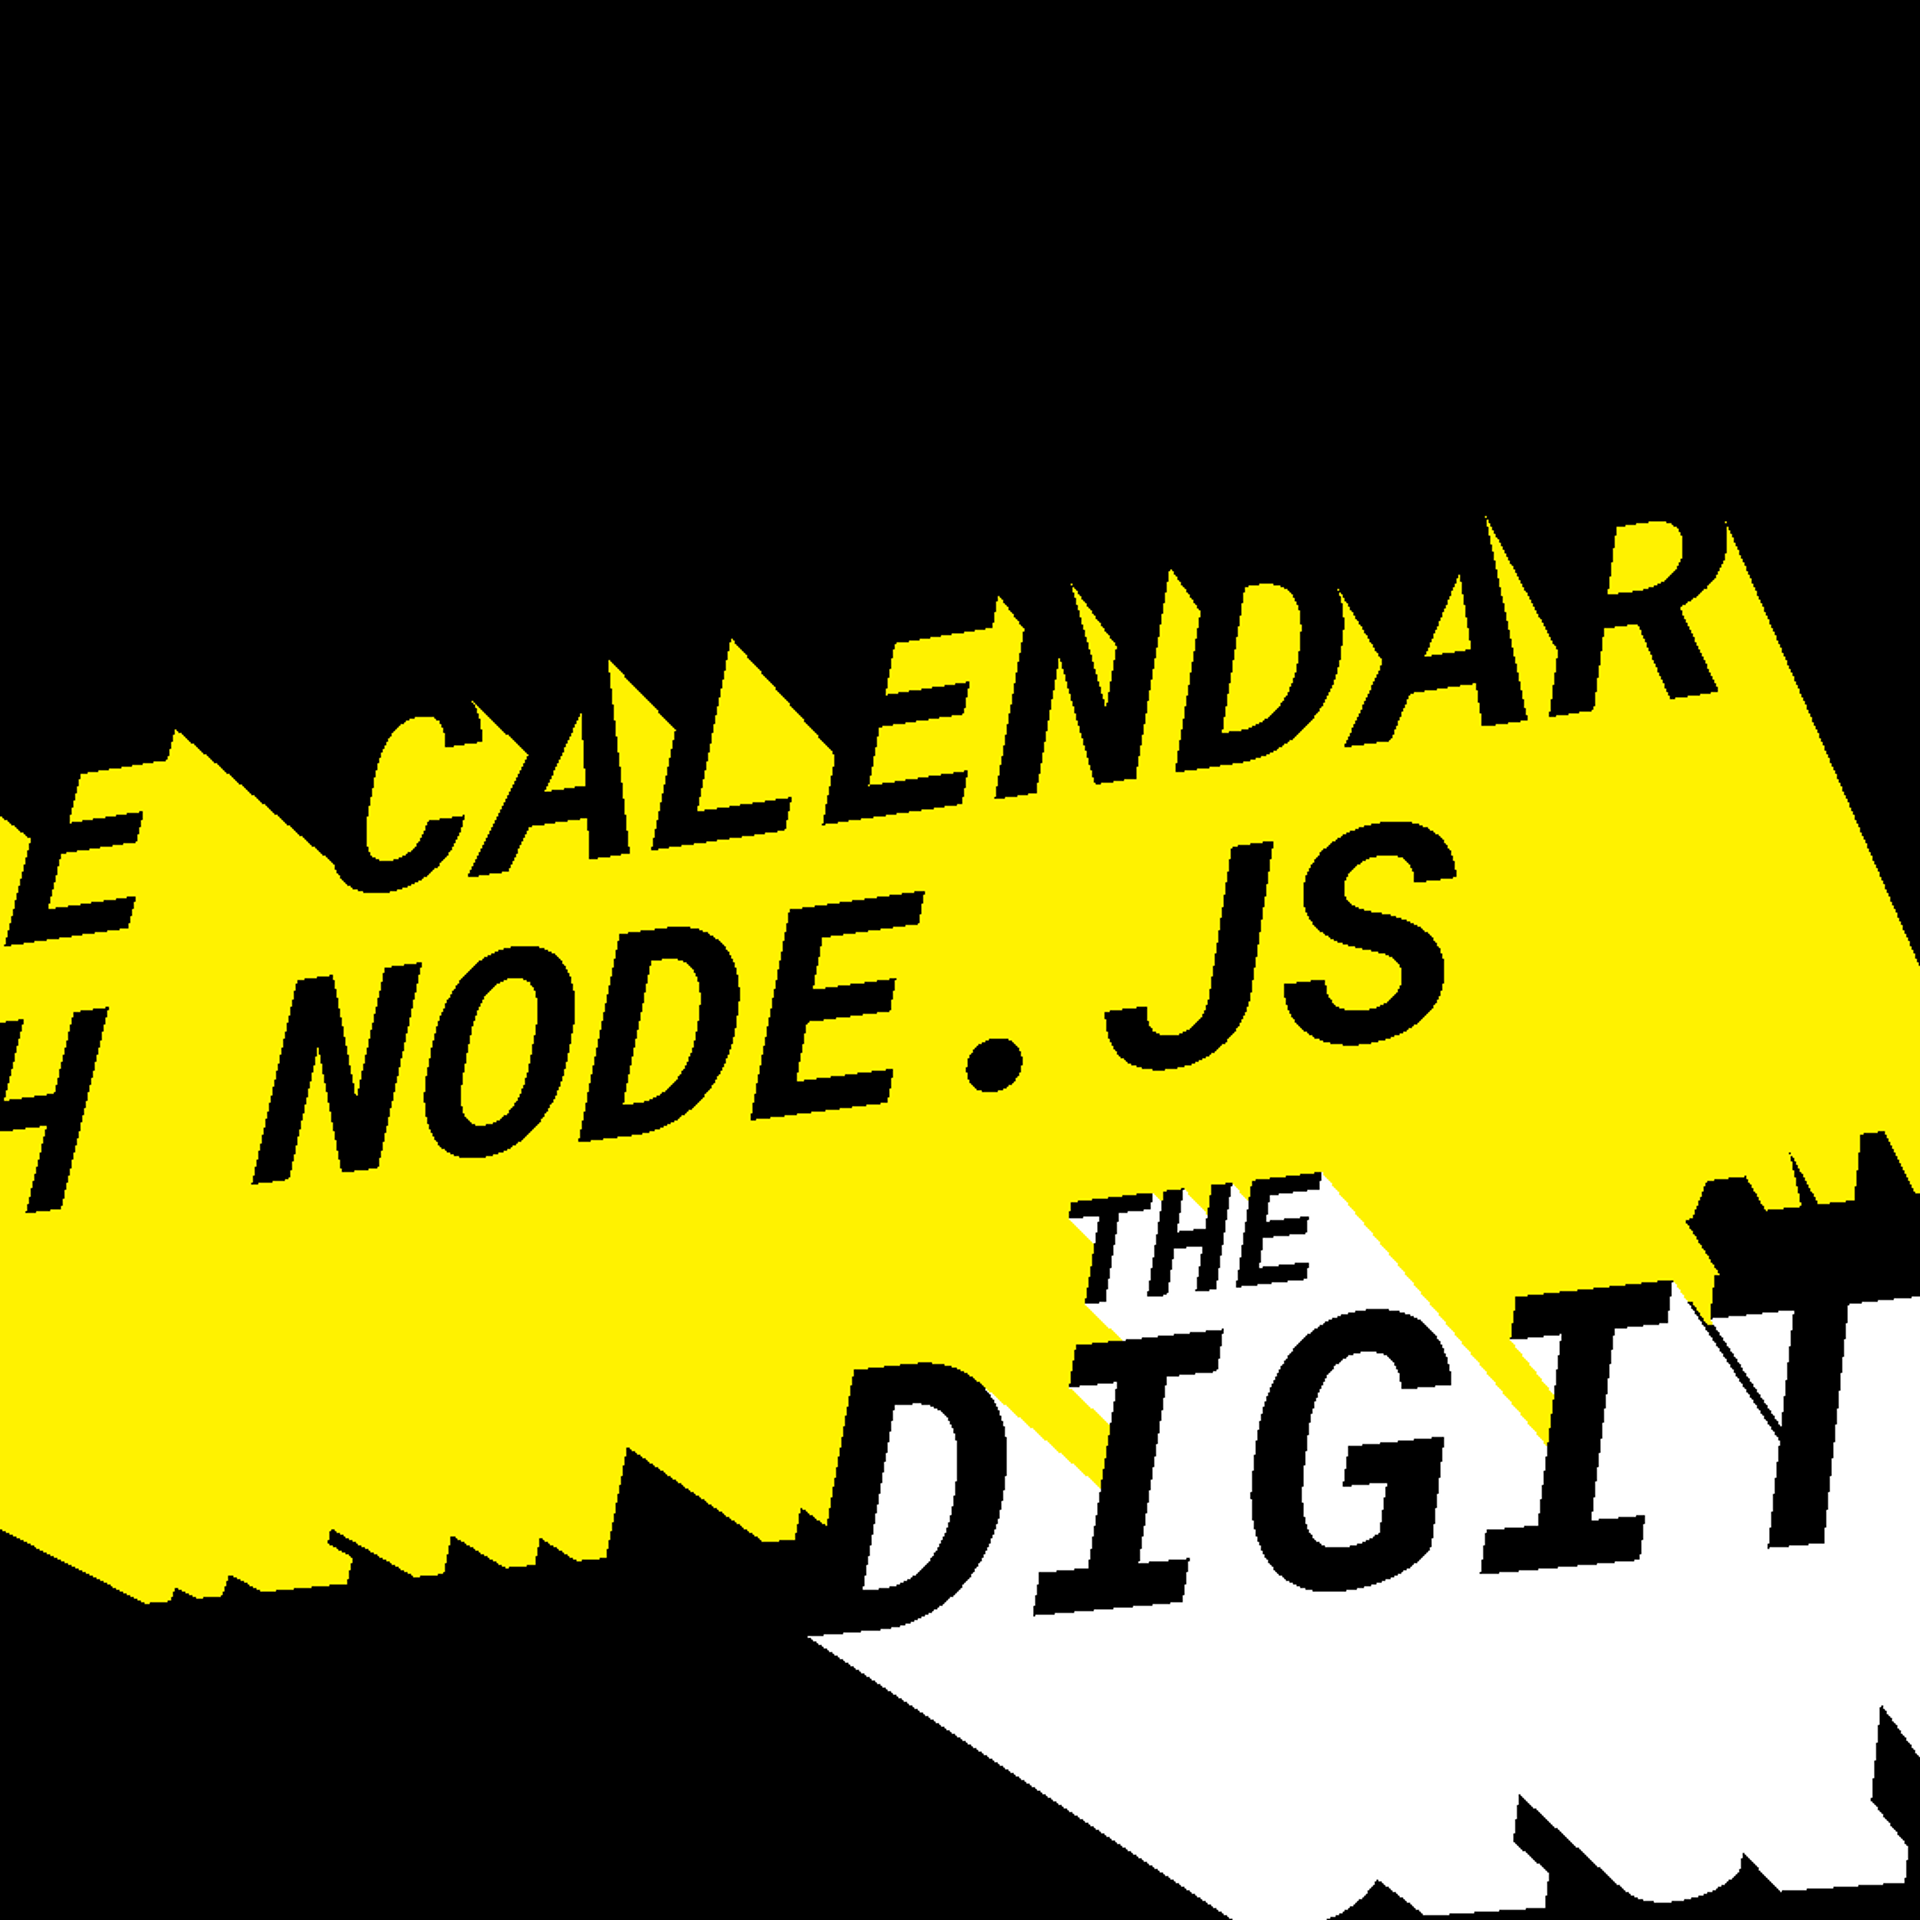 google calendar api with node.js